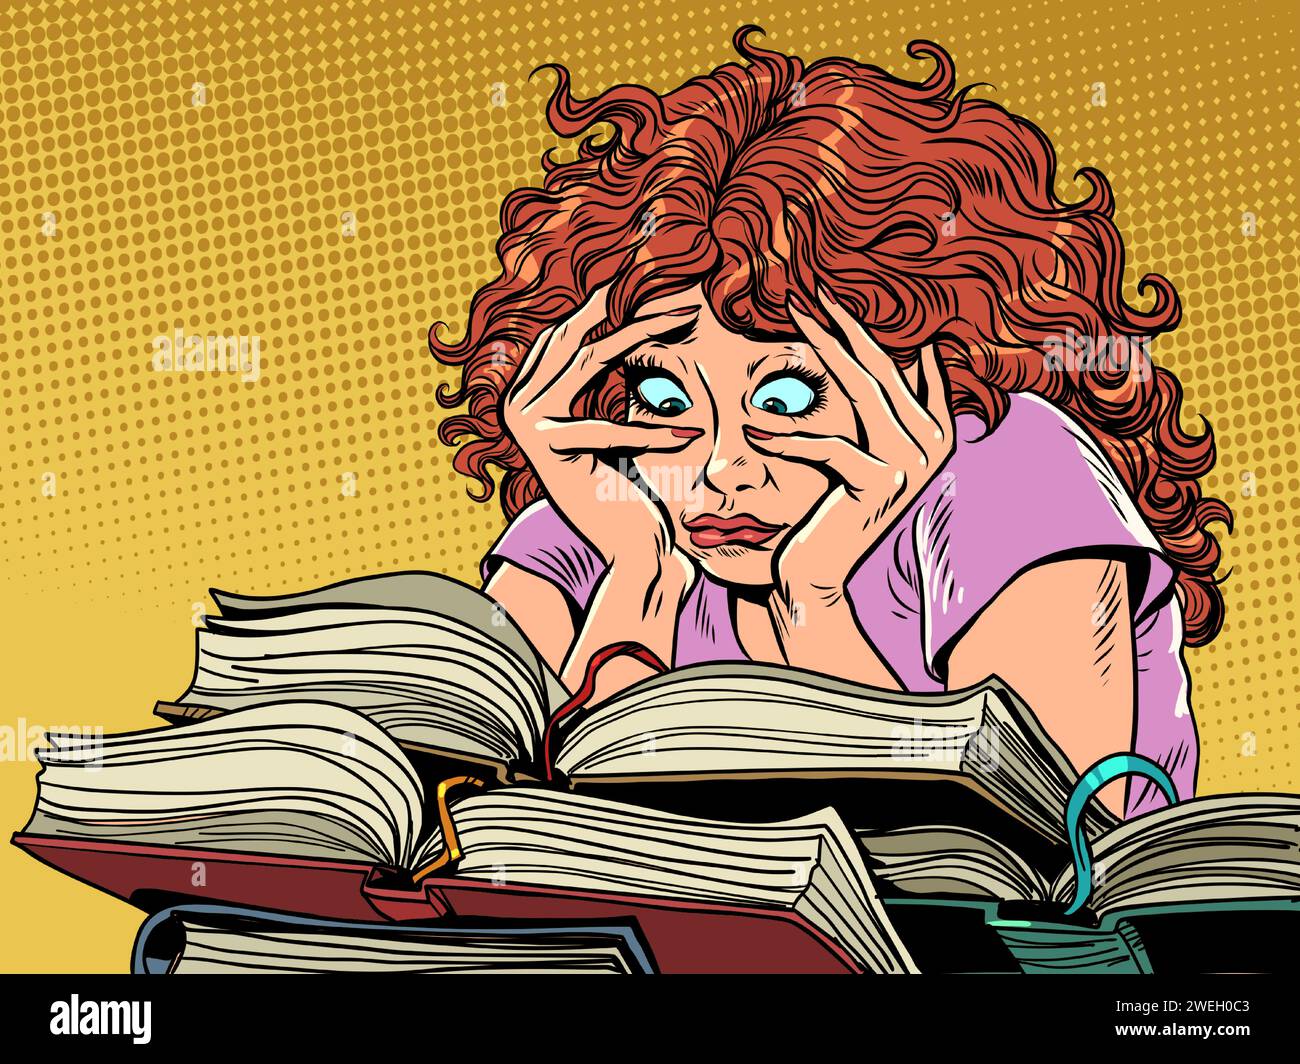 Eine schwierige Sitzung quält die Schülerin und ihre Gesundheit. Eine Frau unter einer riesigen Anzahl von Büchern. Buchhandlung mit einer riesigen Auswahl. Comic-Comic-Pop-Art Stock Vektor